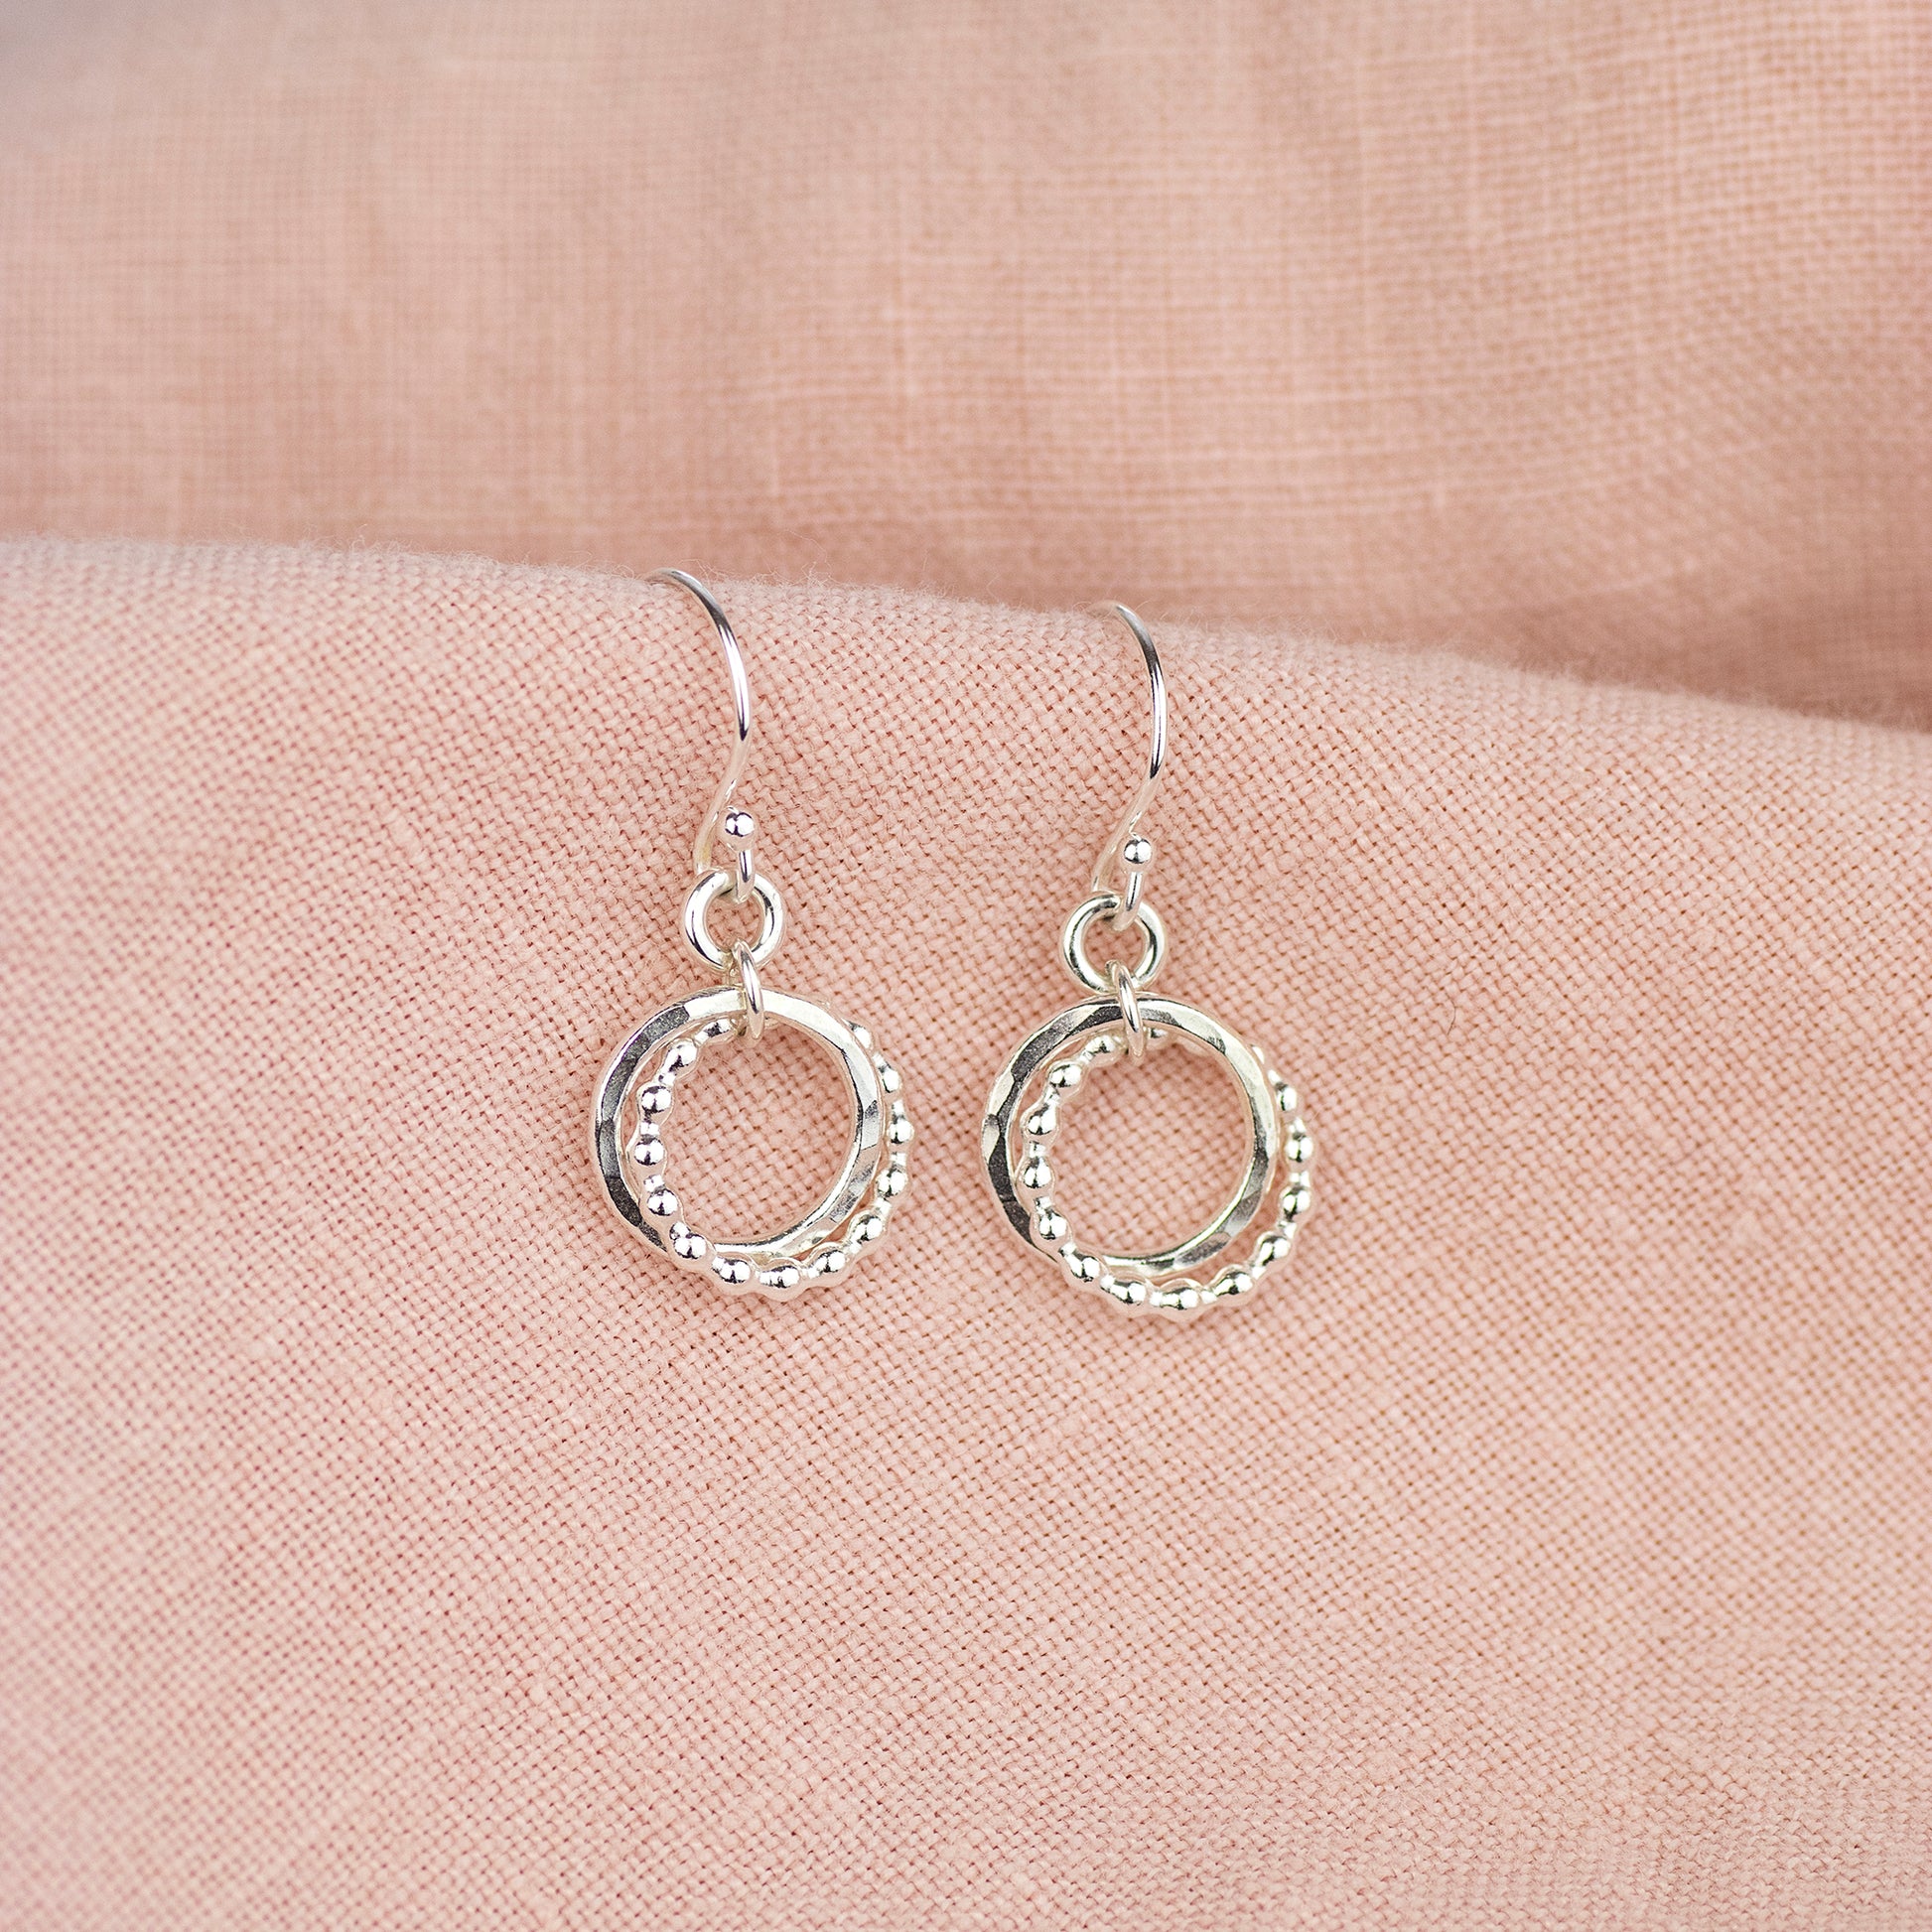 2 Sisters Earrings - Silver Love Knot Earrings